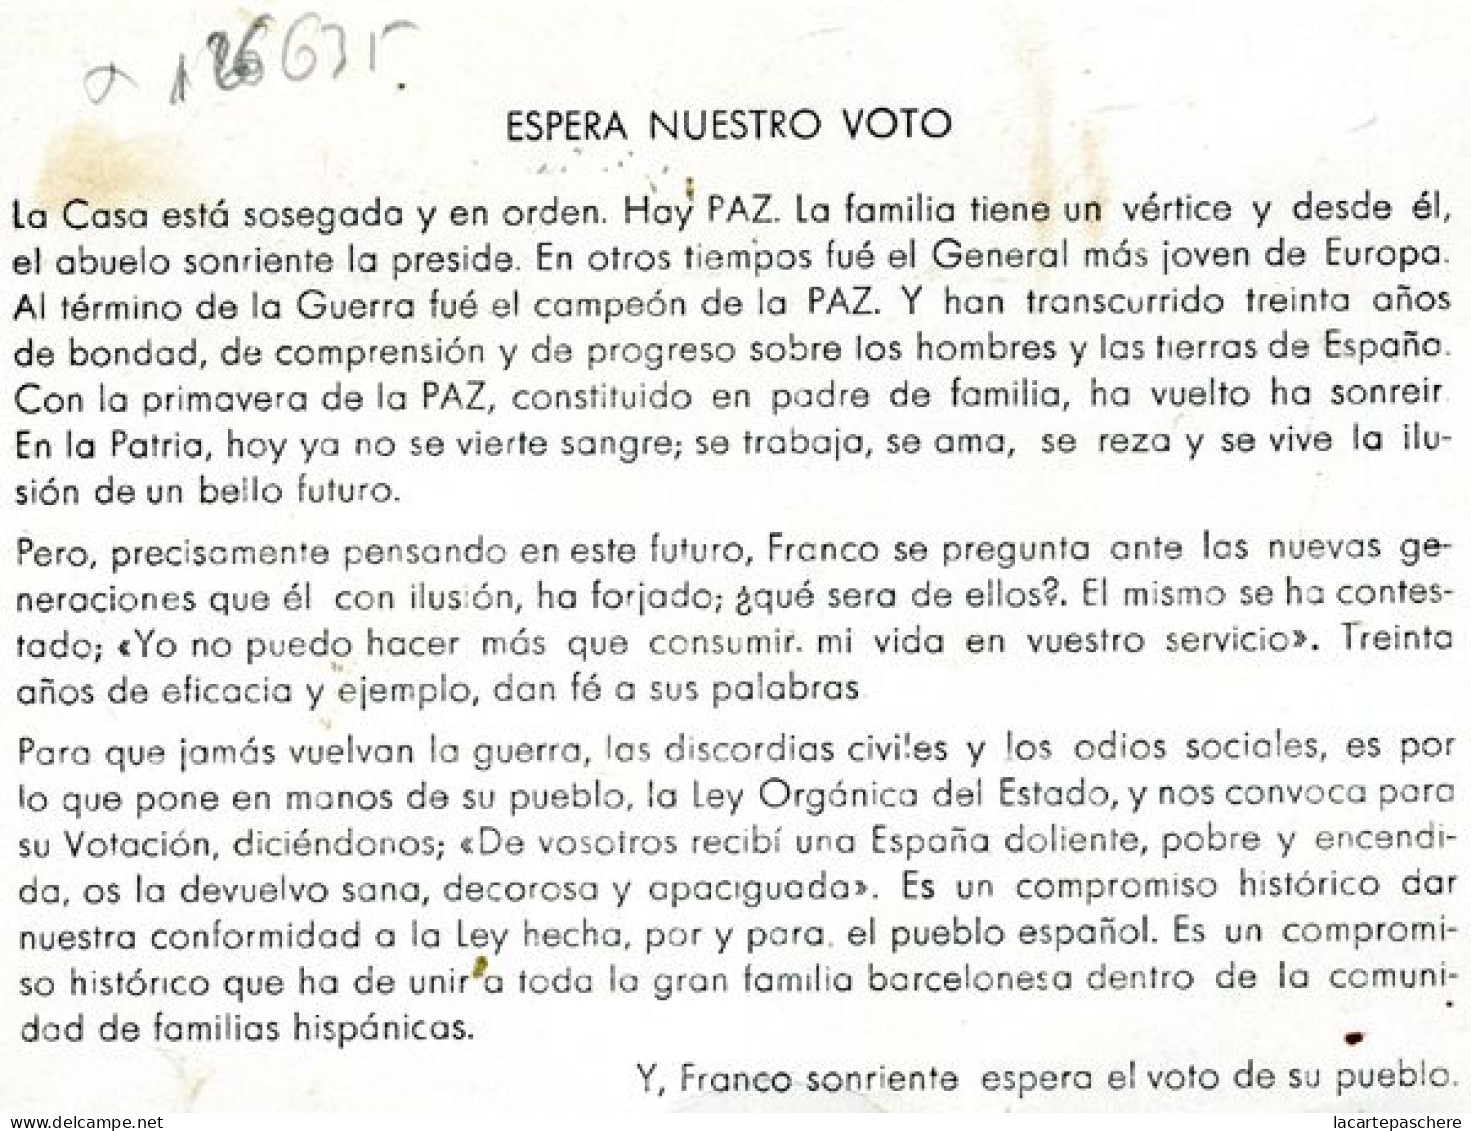 X126635 FOTOGRAFIA DE FRANCISCO FRANCO BAHAMONDE CAUDILLO DE ESPANA EN FAMILIA ESPERANDO NUESTRO VOTO - Guerres - Autres